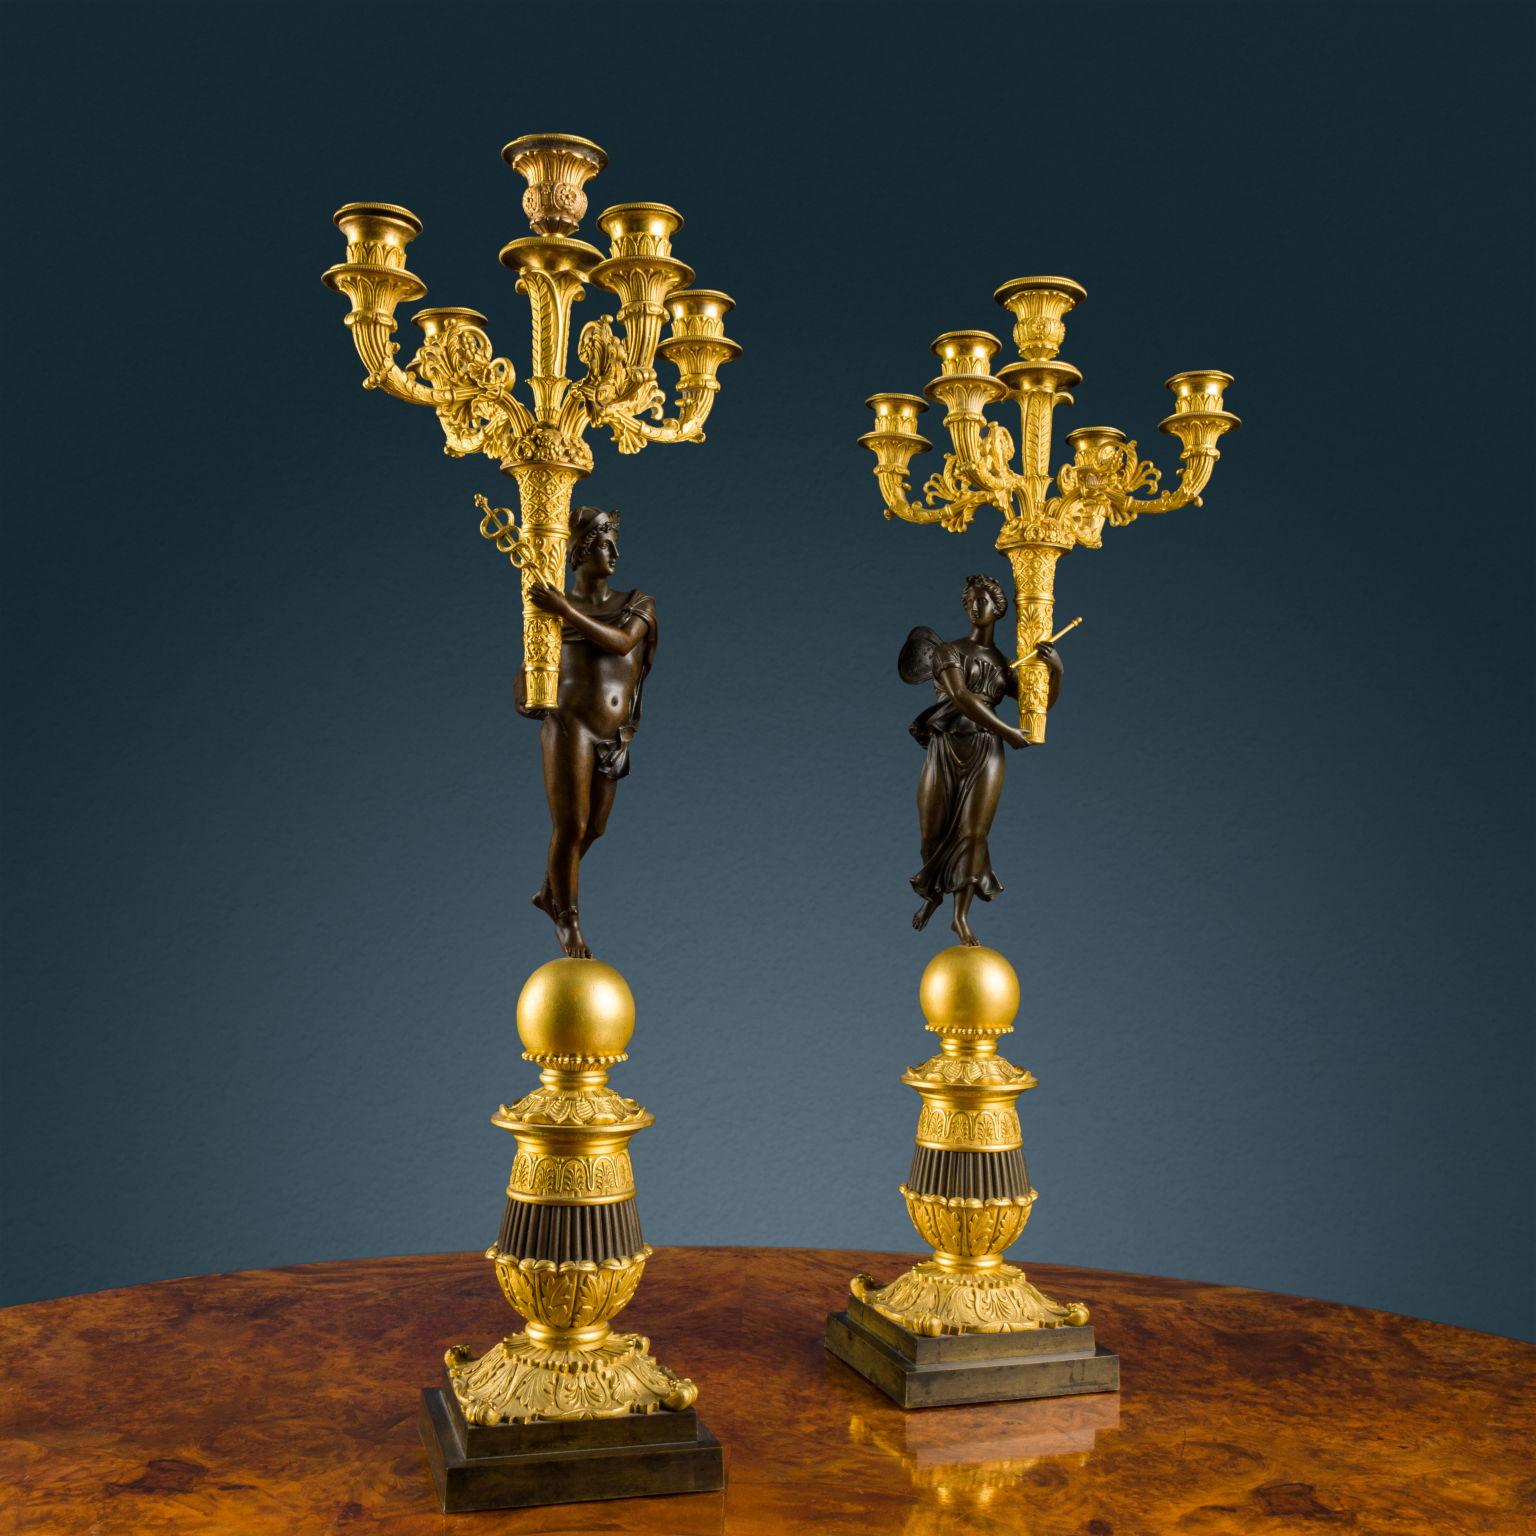 Paire de candélabres en bronze partiellement doré et bruni. Base à gradins d'où part le corps tourné et ciselé avec des motifs de feuilles et d'anthémis, au sommet de laquelle se trouve une sphère dorée formant le support des deux sculptures en